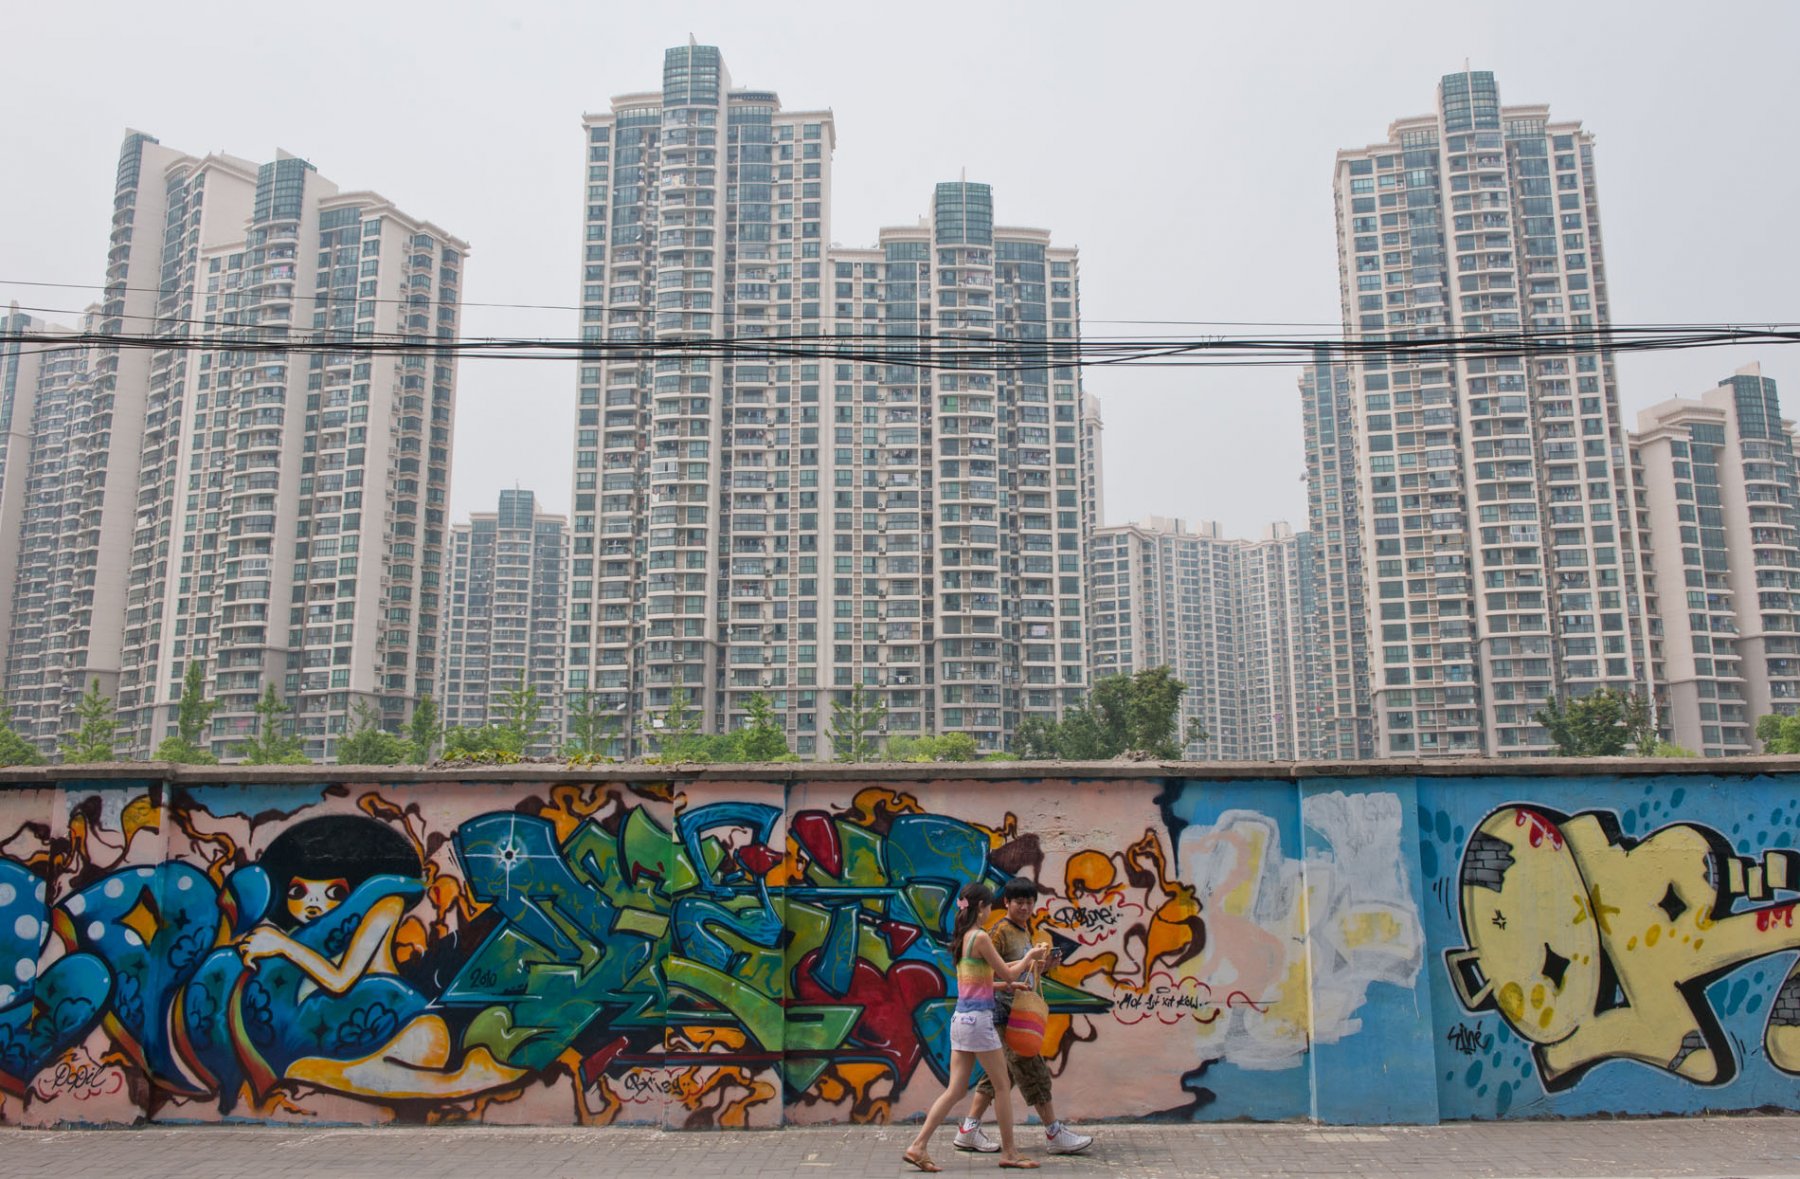 Nicht alle mögen die bunten Graffittis junger Künstler, die sich vor den grauen Hochhaustürmen mit tausenden Mietwohnungen abheben. Foto: Boris Roessler